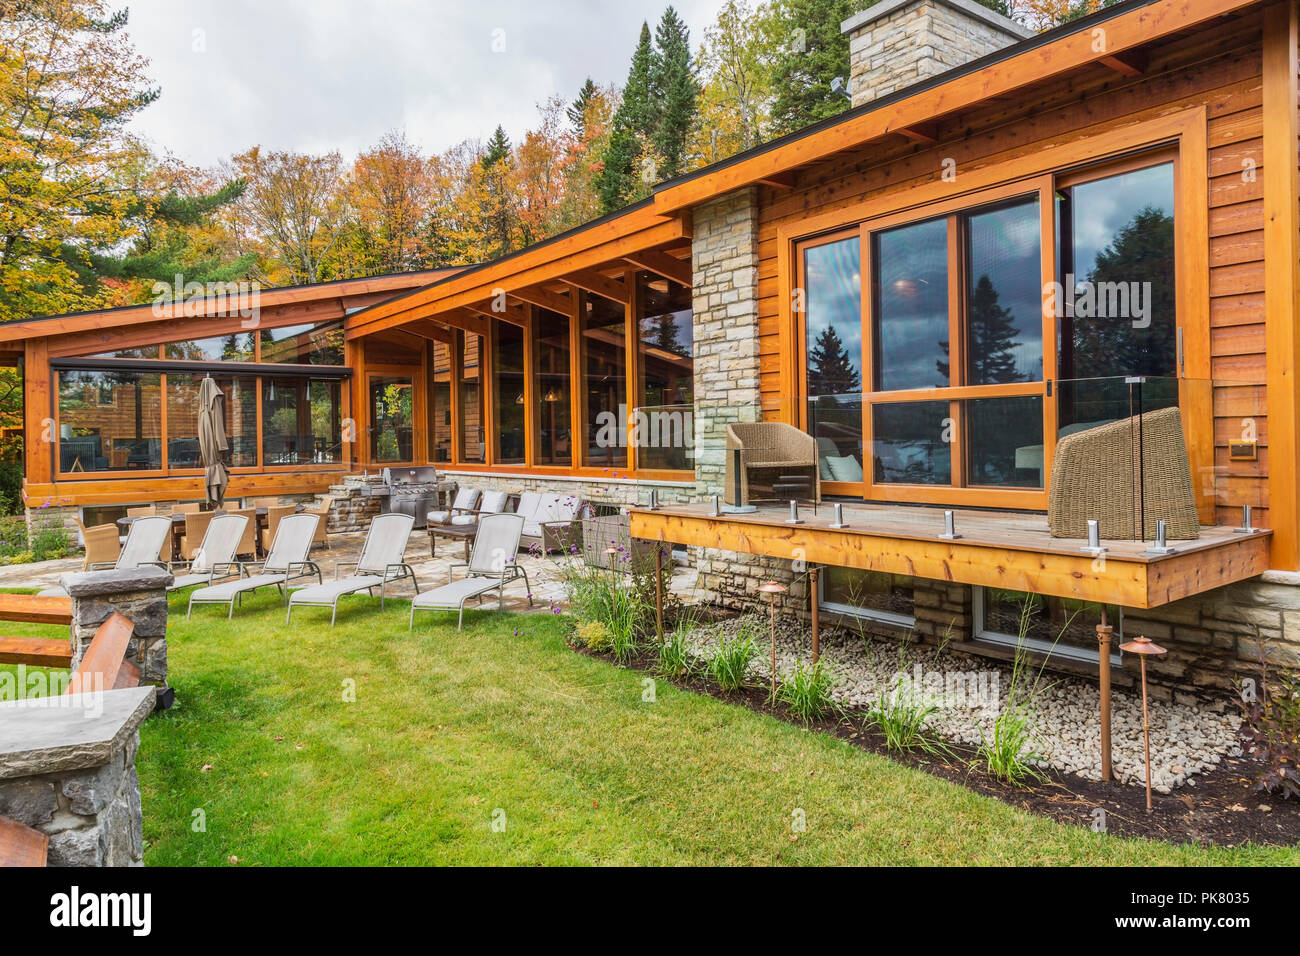 Vue arrière du cèdre et du bois teinté de luxe maison en bois avec des fenêtres panoramiques, terrasse et patio en pierre naturelle en automne, Québec Banque D'Images